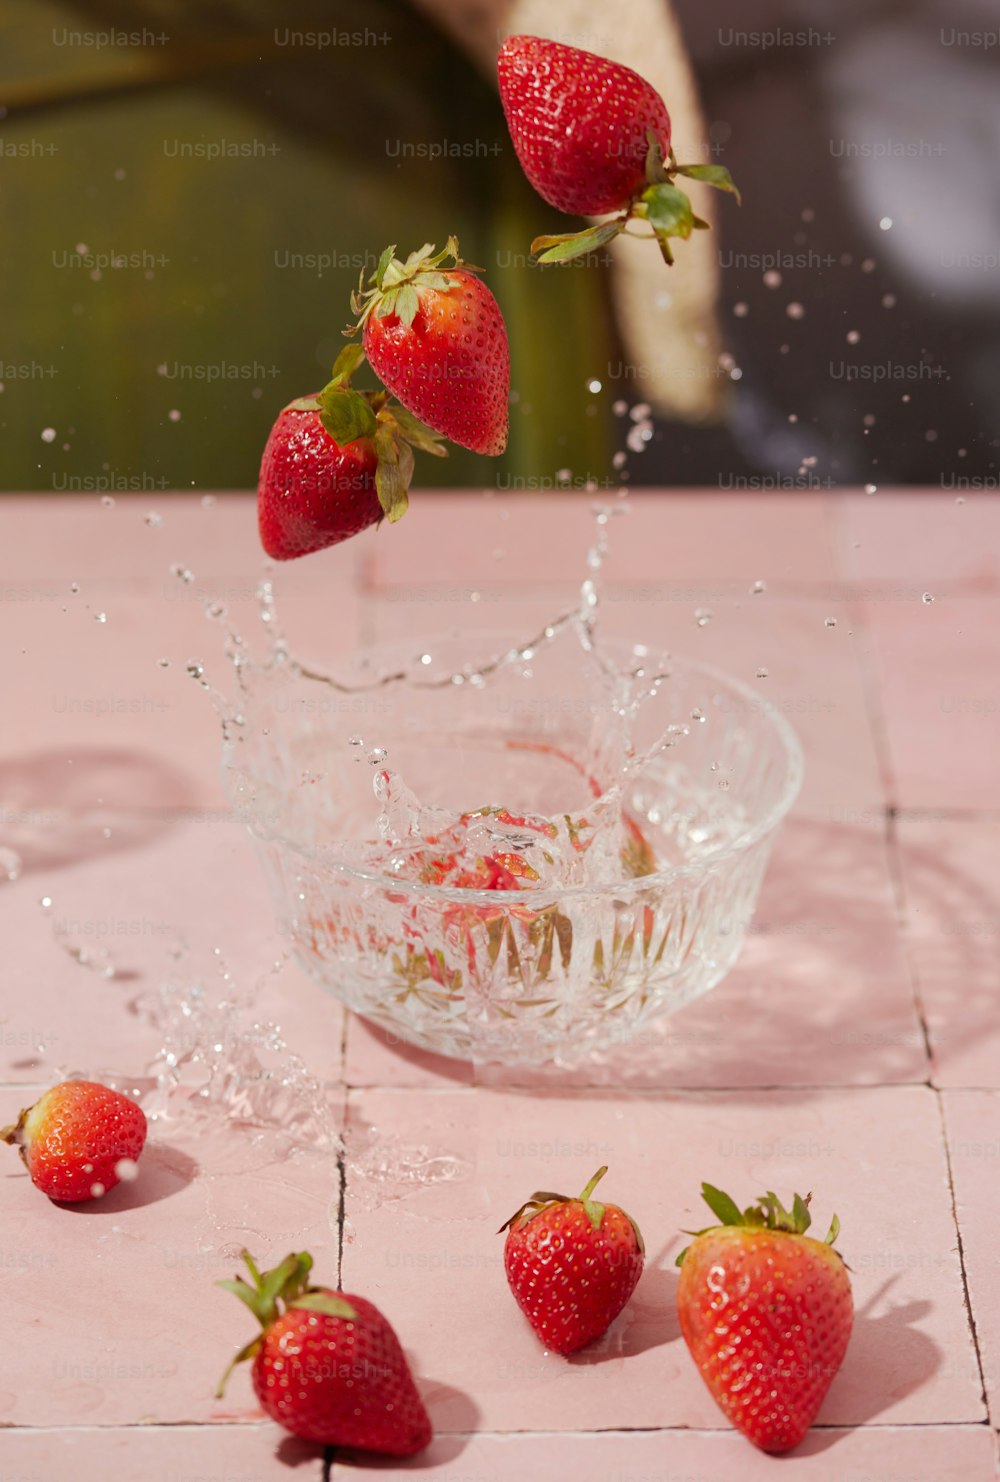 Erdbeeren fallen in eine Schüssel mit Wasser auf einem Tisch